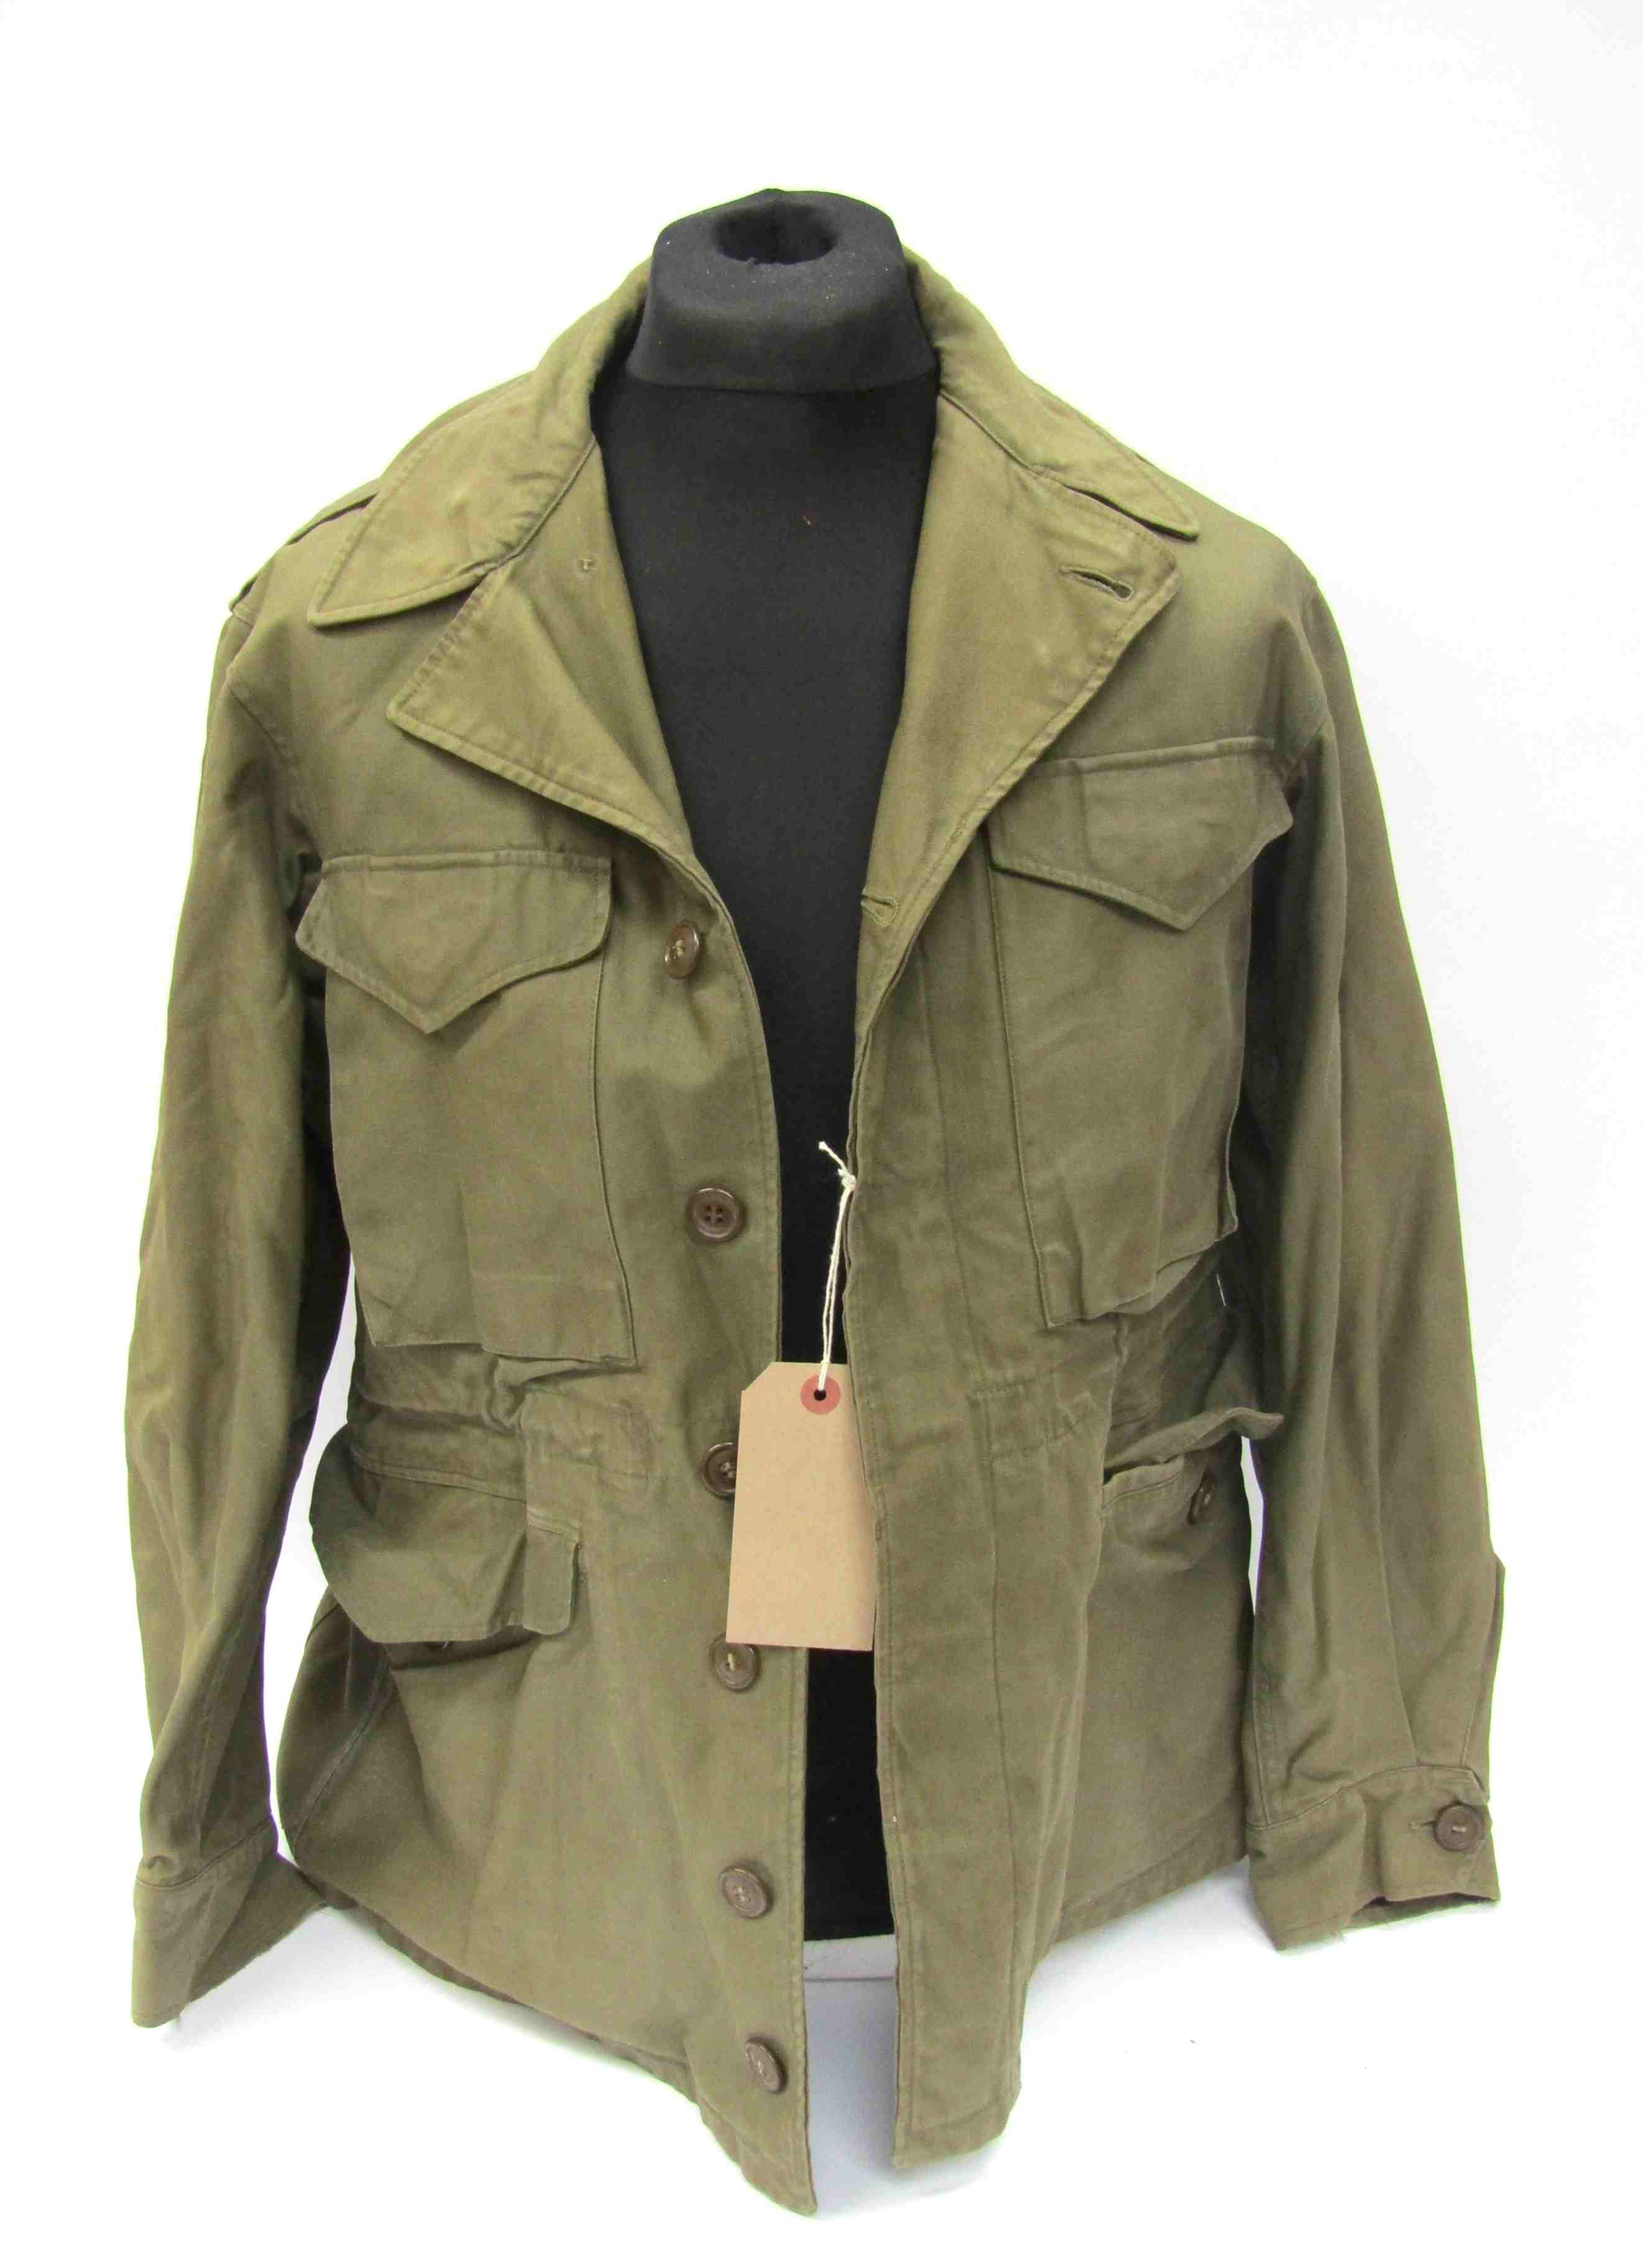 A US M-1943 field jacket